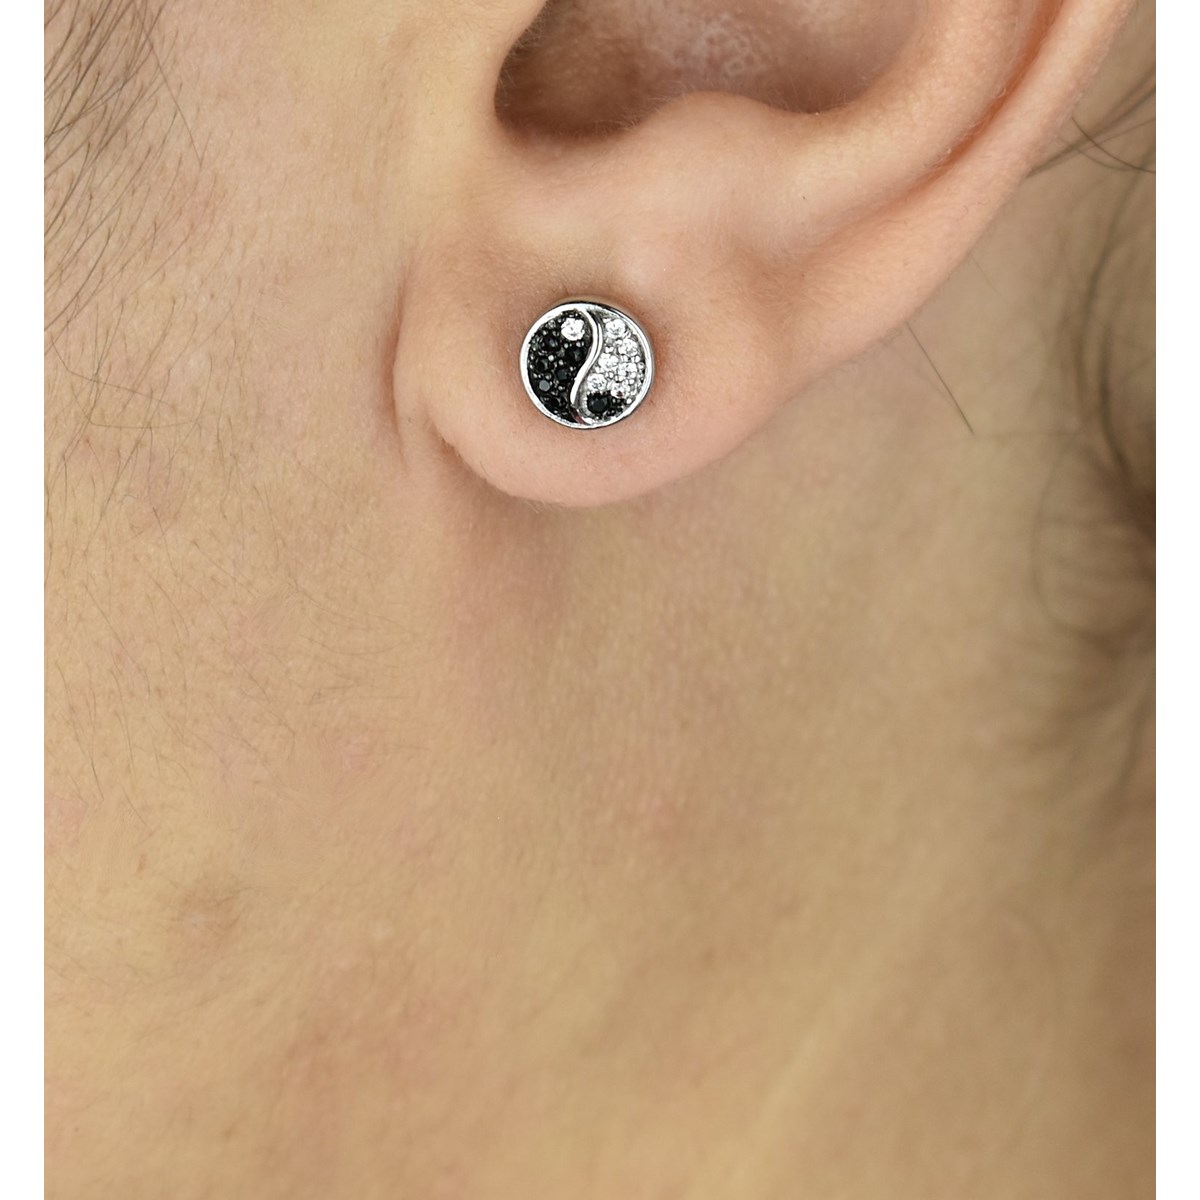 Boucles d'oreilles yin yang serti d'oxyde de zirconium blancs et noirs Argent 925 Rhodié - vue 2